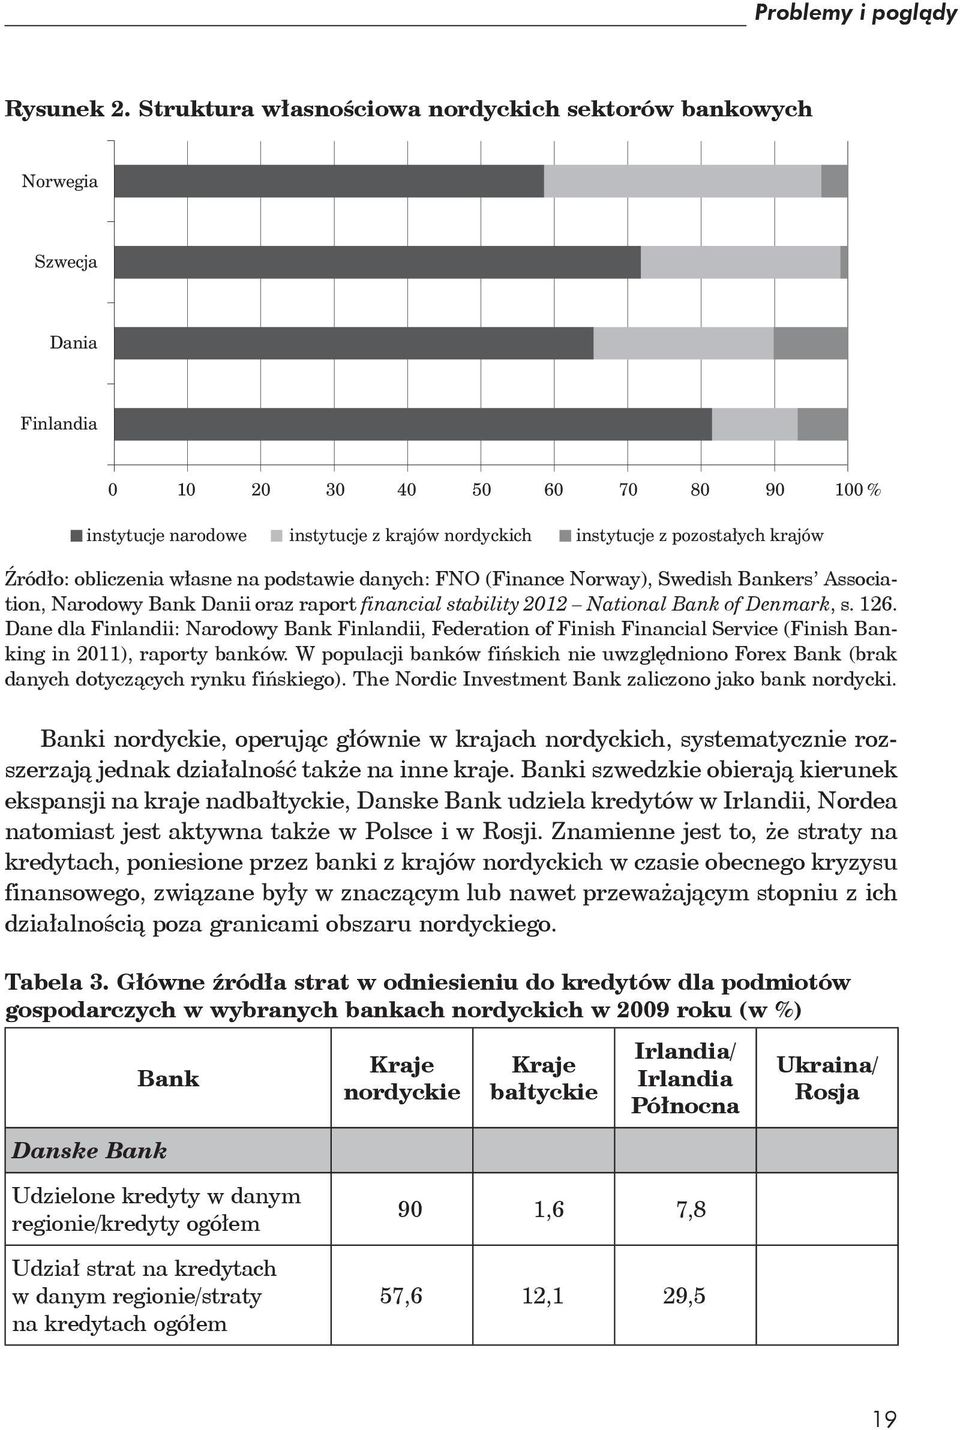 krajów ród o: obliczenia w asne na podstawie danych: FNO (Finance Norway), Swedish Bankers Association, Narodowy Bank Danii oraz raport financial stability 2012 National Bank of Denmark, s. 126.